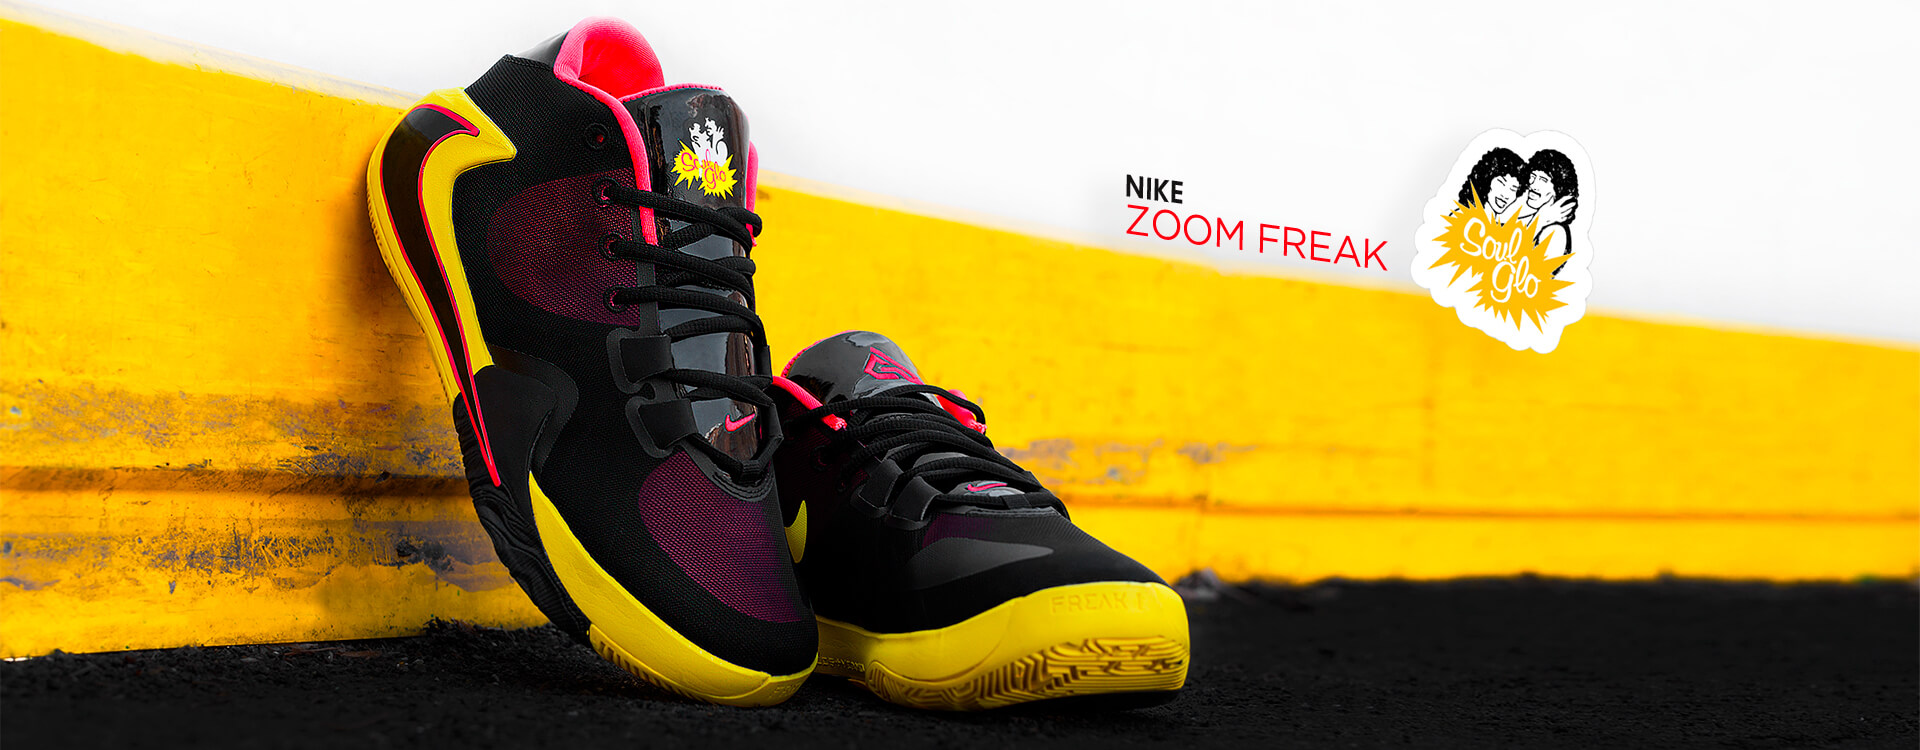 Баскетбольные кроссовки Nike Zoom Freak 1 «Soul Glo»